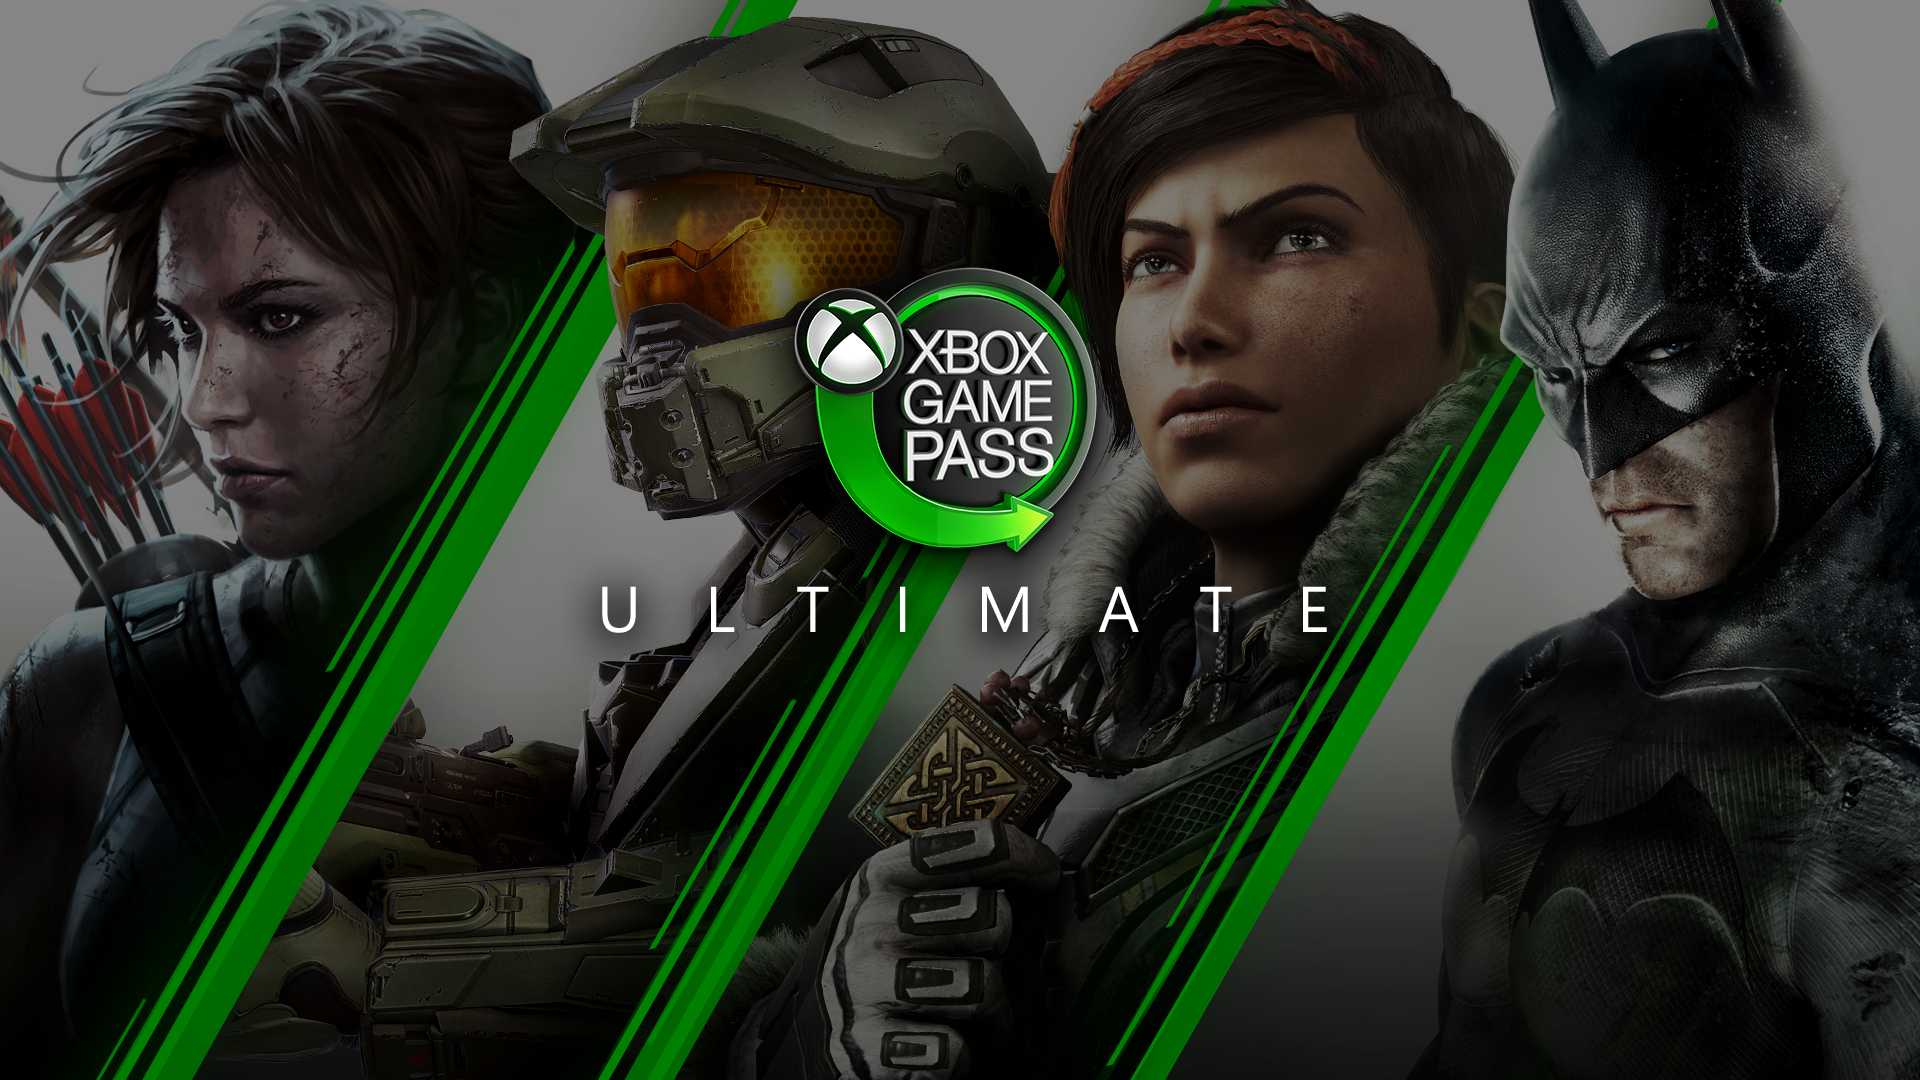 Xbox Game Pass Ultimate - Assinatura 1 Mês - Escorrega o Preço